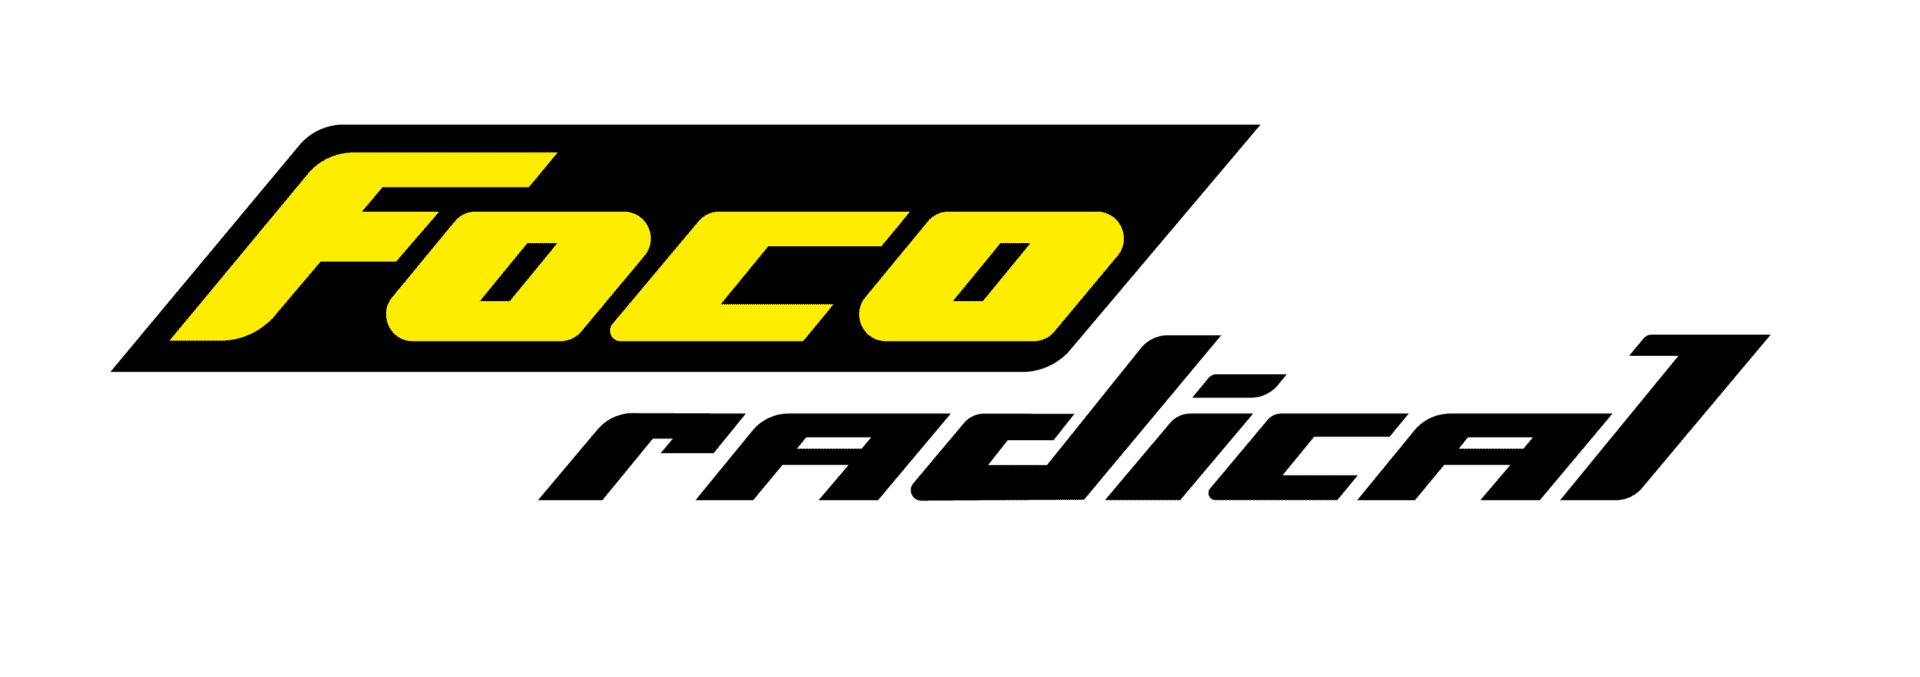 logo Foco Radical